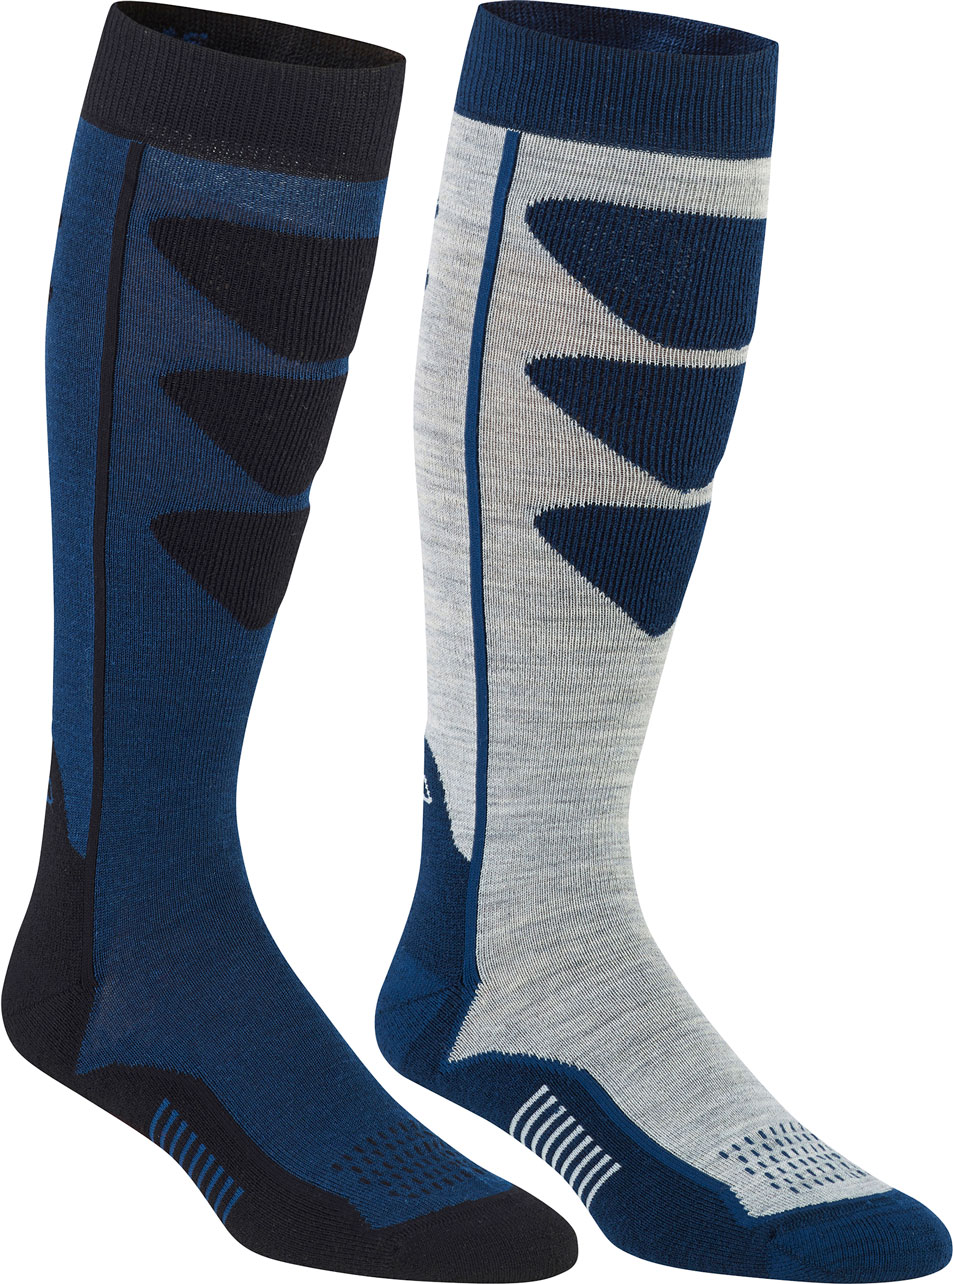 Men's ski socks